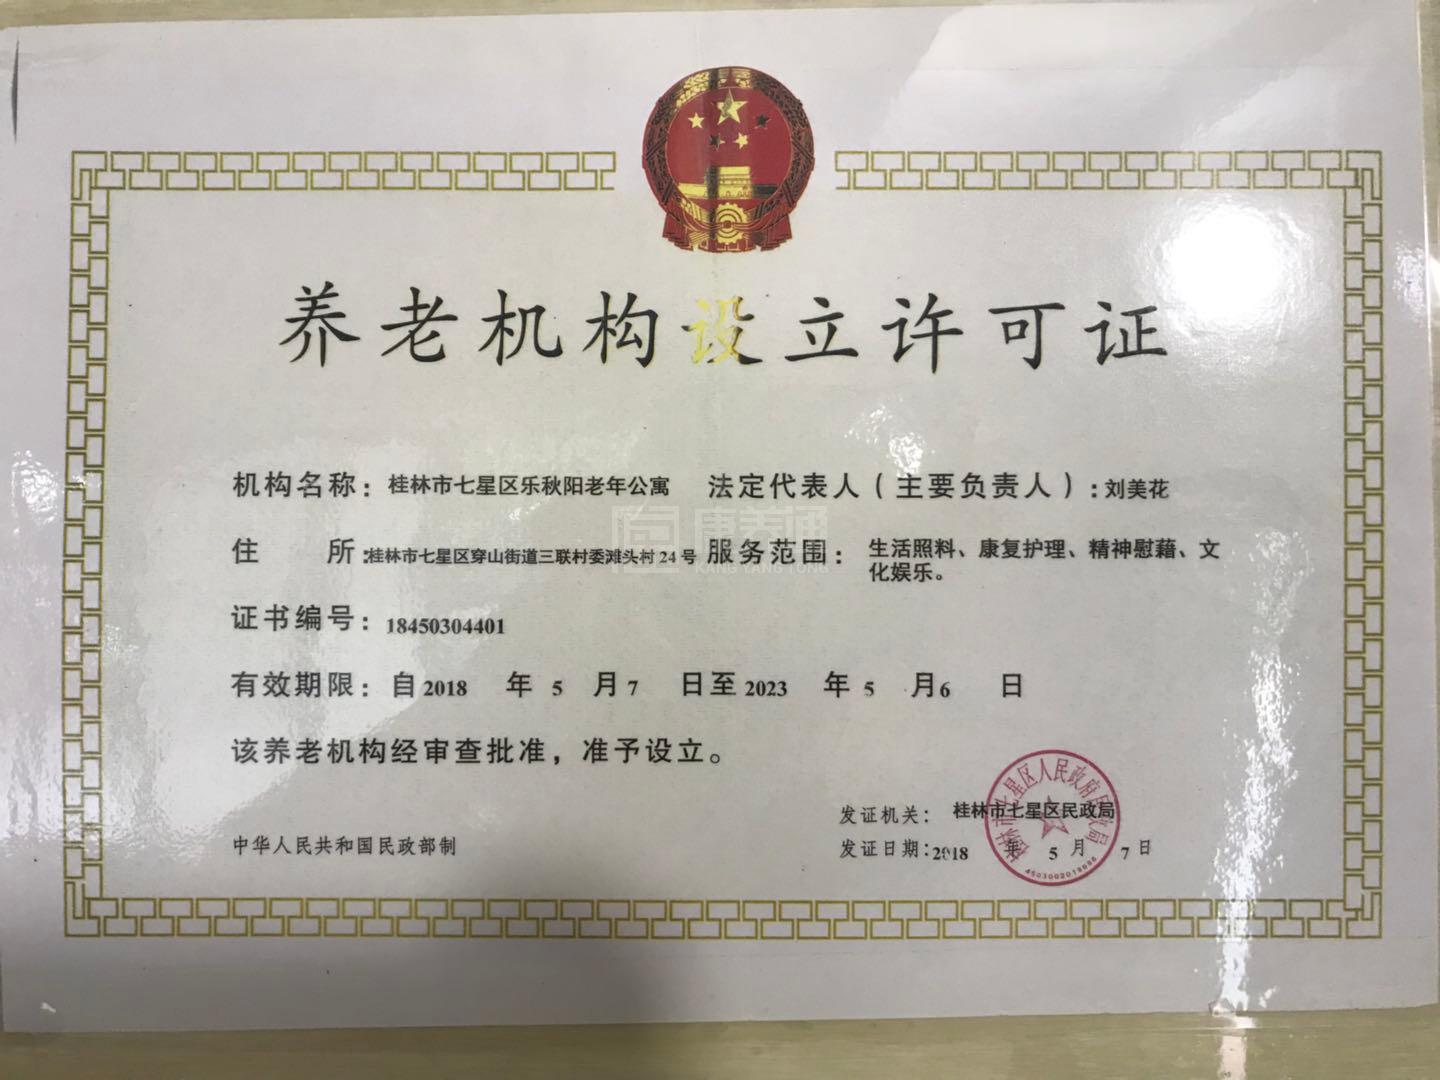 桂林市七星区乐秋阳老年公寓服务项目图1健康安全、营养均衡、味美可口